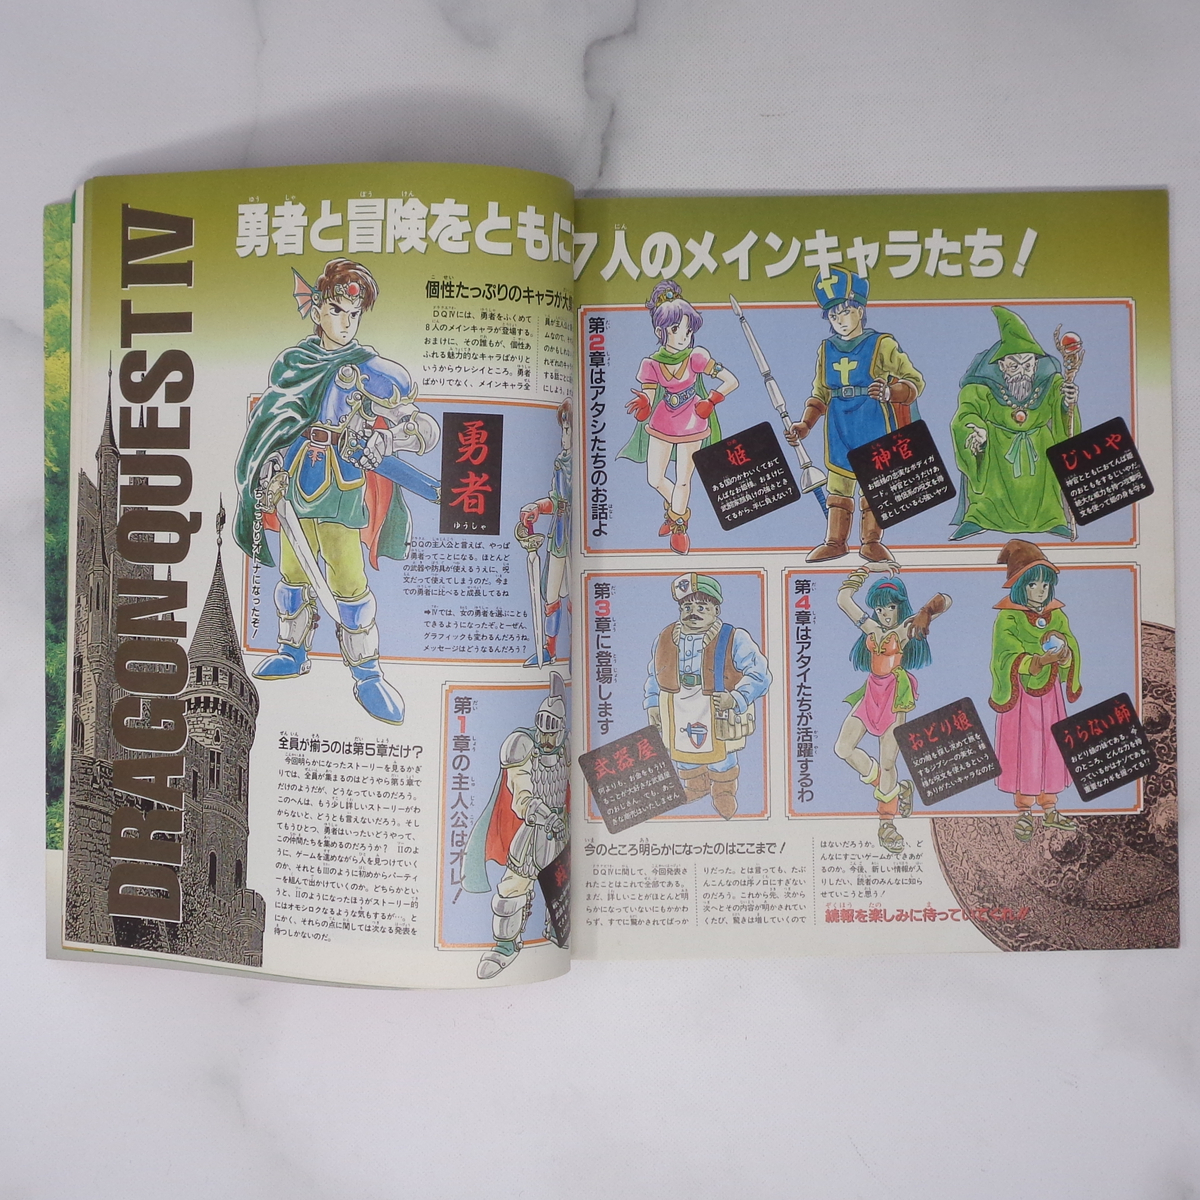 ファミコン必勝本 1989年2月3日号 Vol.3 /ドラゴンクエスト4/ウィザードリィ2/ファイナルファンタジー2/ゲーム雑誌[Free Shipping]